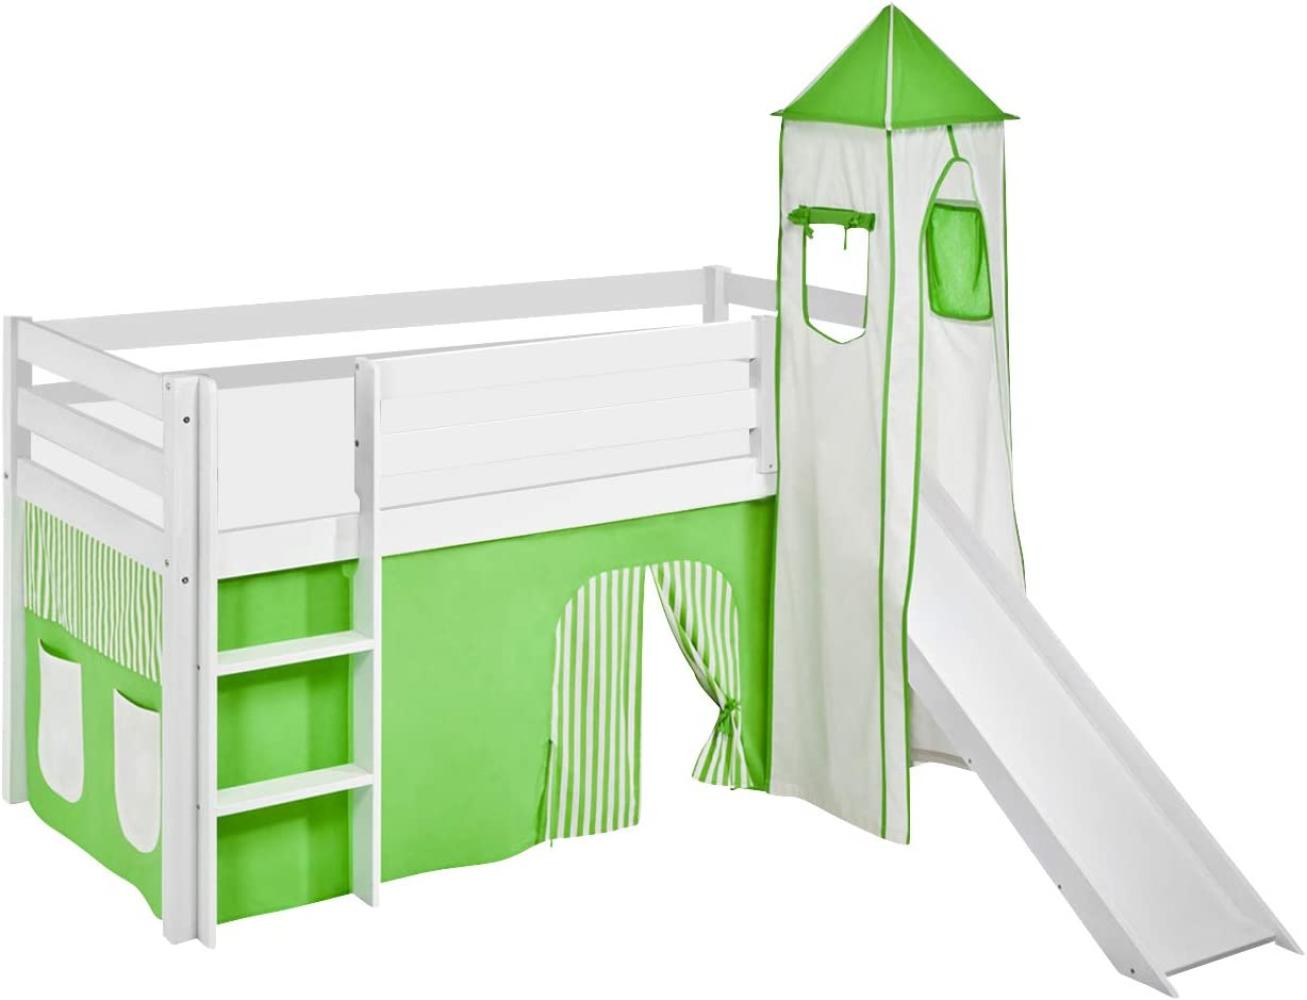 Lilokids 'Jelle' Spielbett 90 x 190 cm, Grün Beige, Kiefer massiv, mit Turm, Rutsche und Vorhang Bild 1